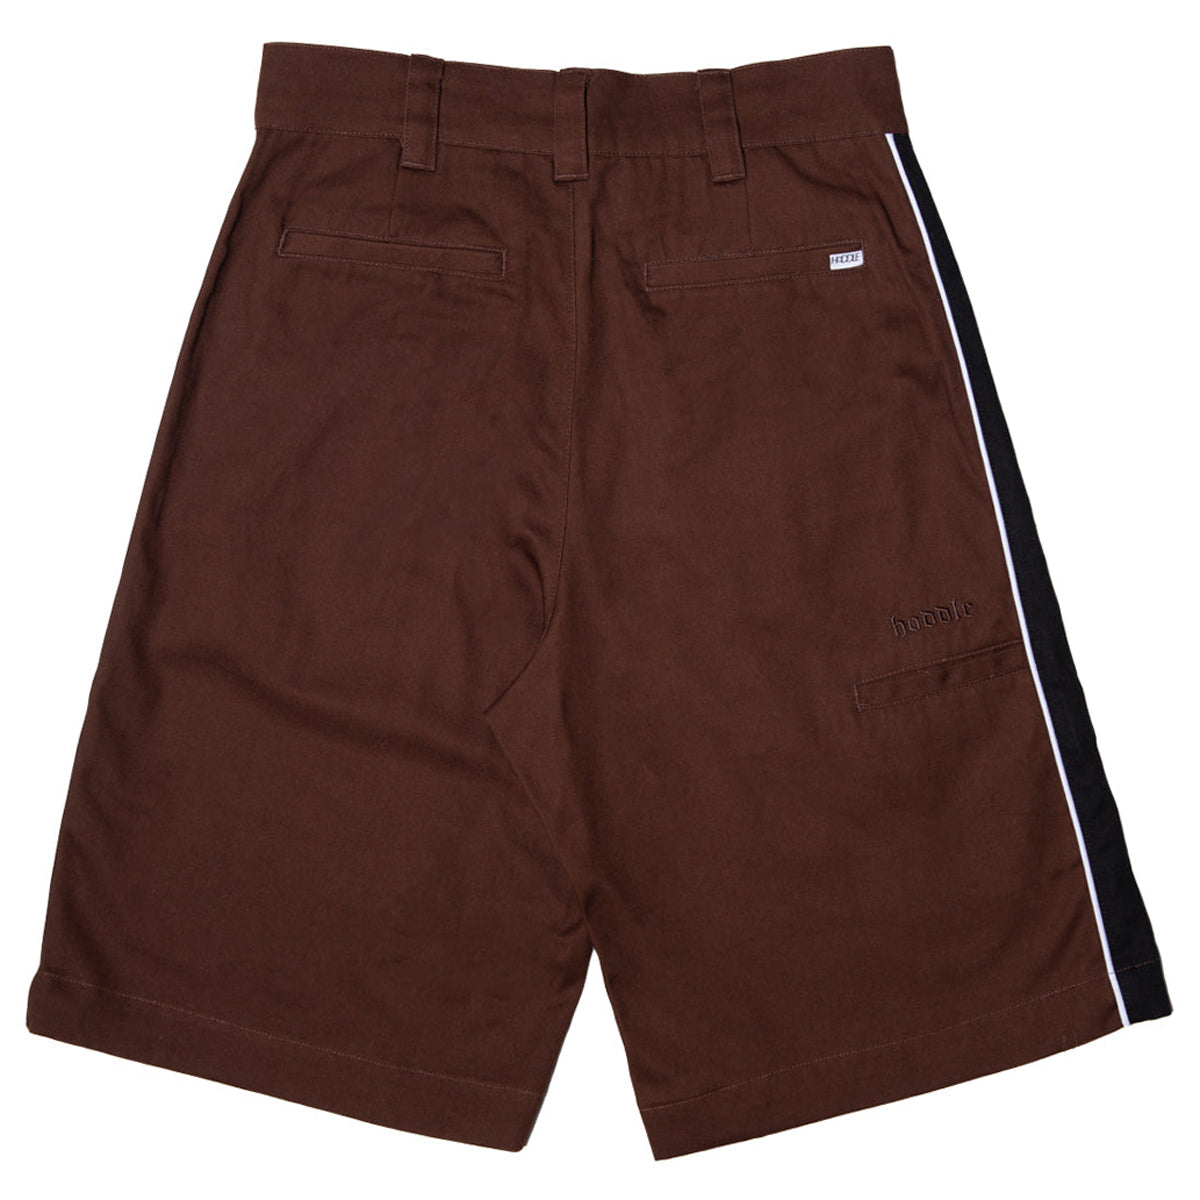 Hoddle Bermuda Shorts - Chocolate/Black image 2